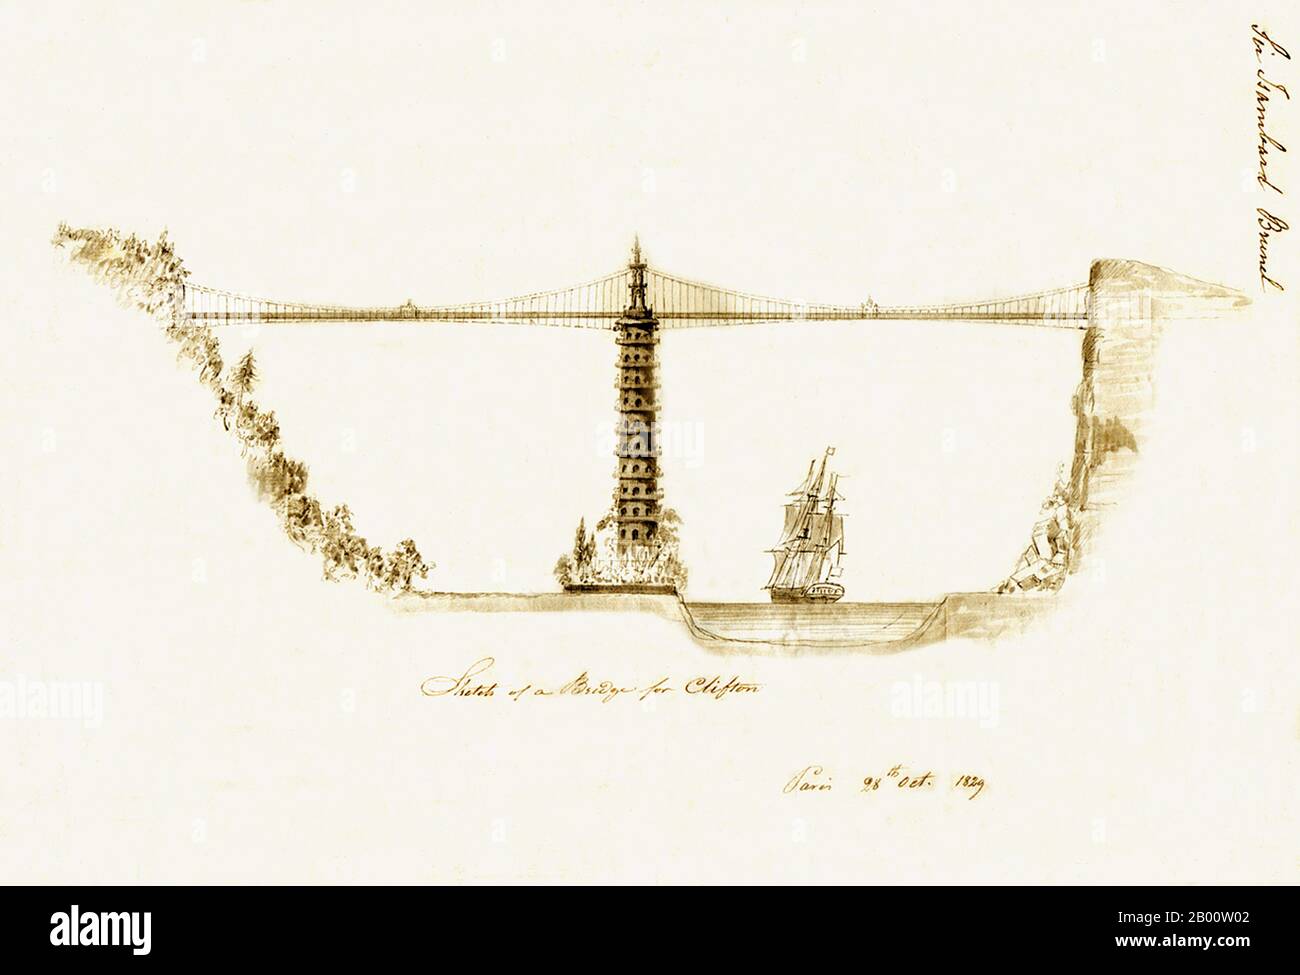 England: Ein bemerkenswerter Entwurf für eine 'Chinoiserie' Brücke über die Avon-Schlucht in Bristol von Sir Isambard Kingdom Brunel (1806-1859), datiert Paris, 28. Oktober 1829. Die Clifton Suspension Bridge wurde 1864 nach Brunels Entwurf fertiggestellt, allerdings ohne Pagode. Stockfoto